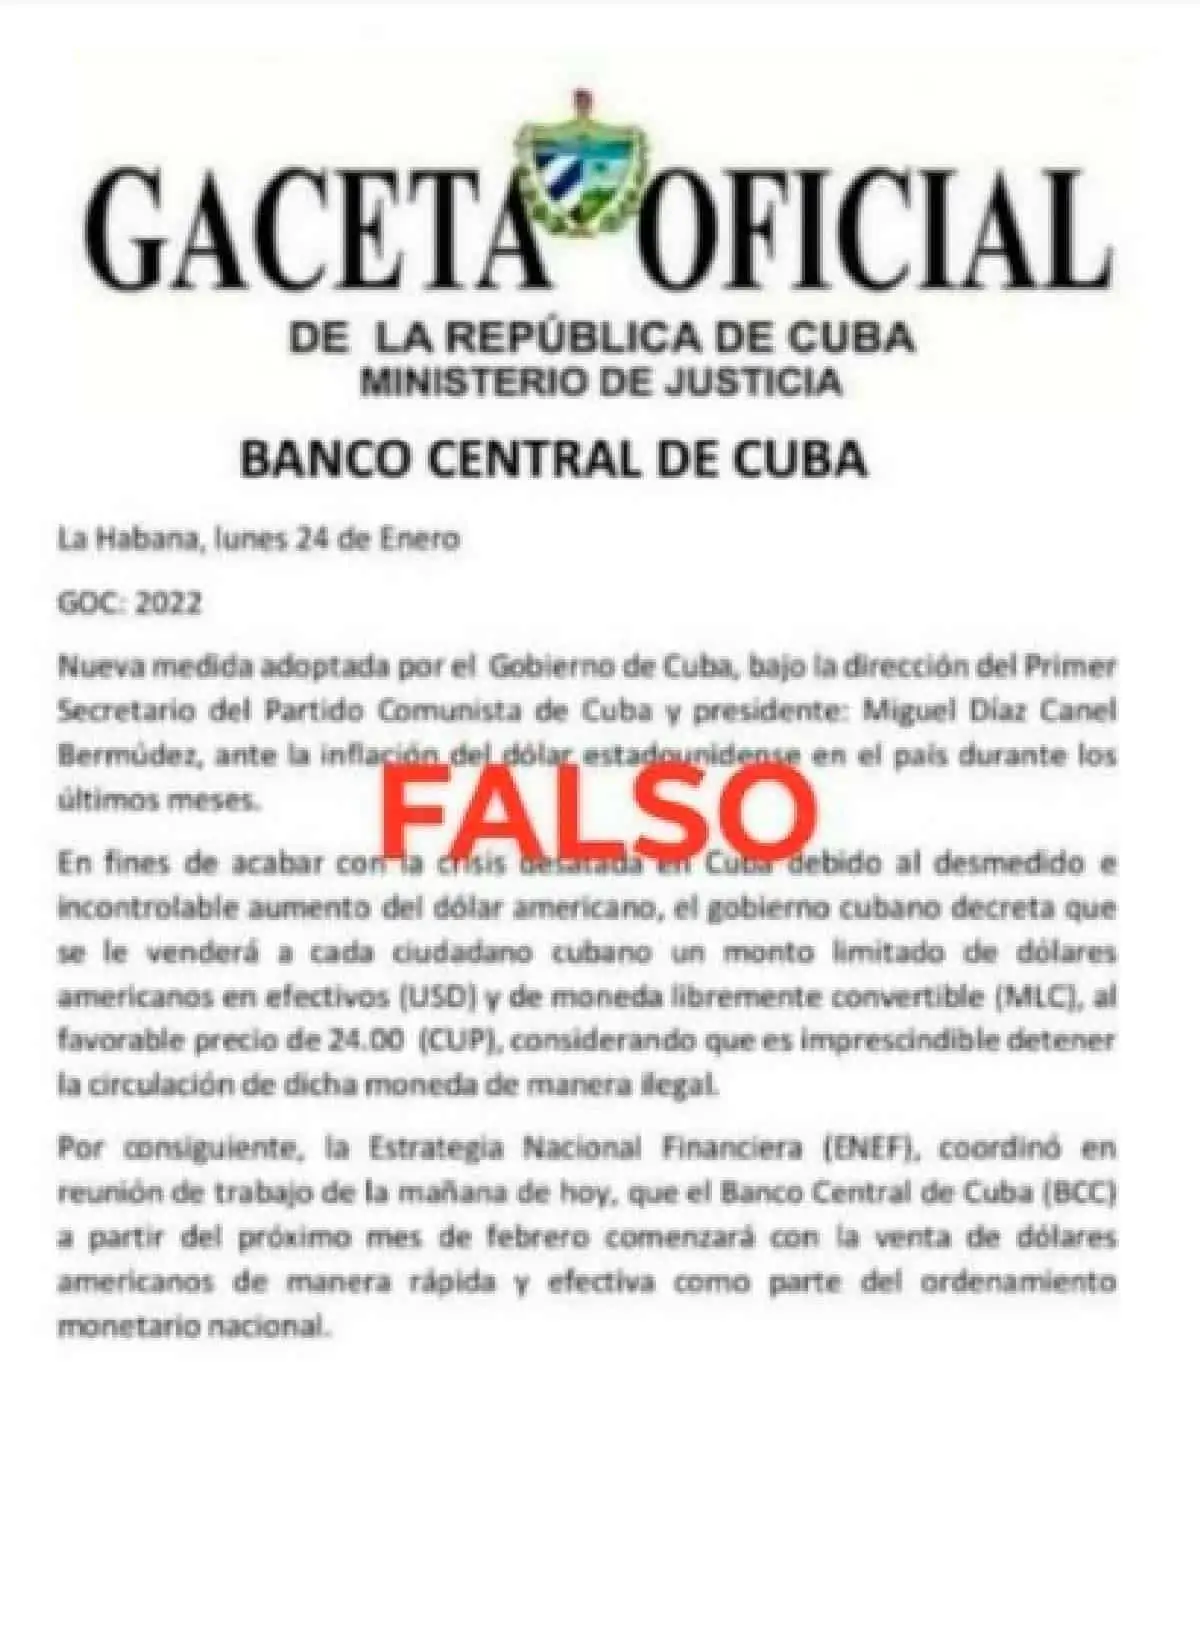 El Banco Central de Cuba niega noticia falsa sobre la venta de divisas